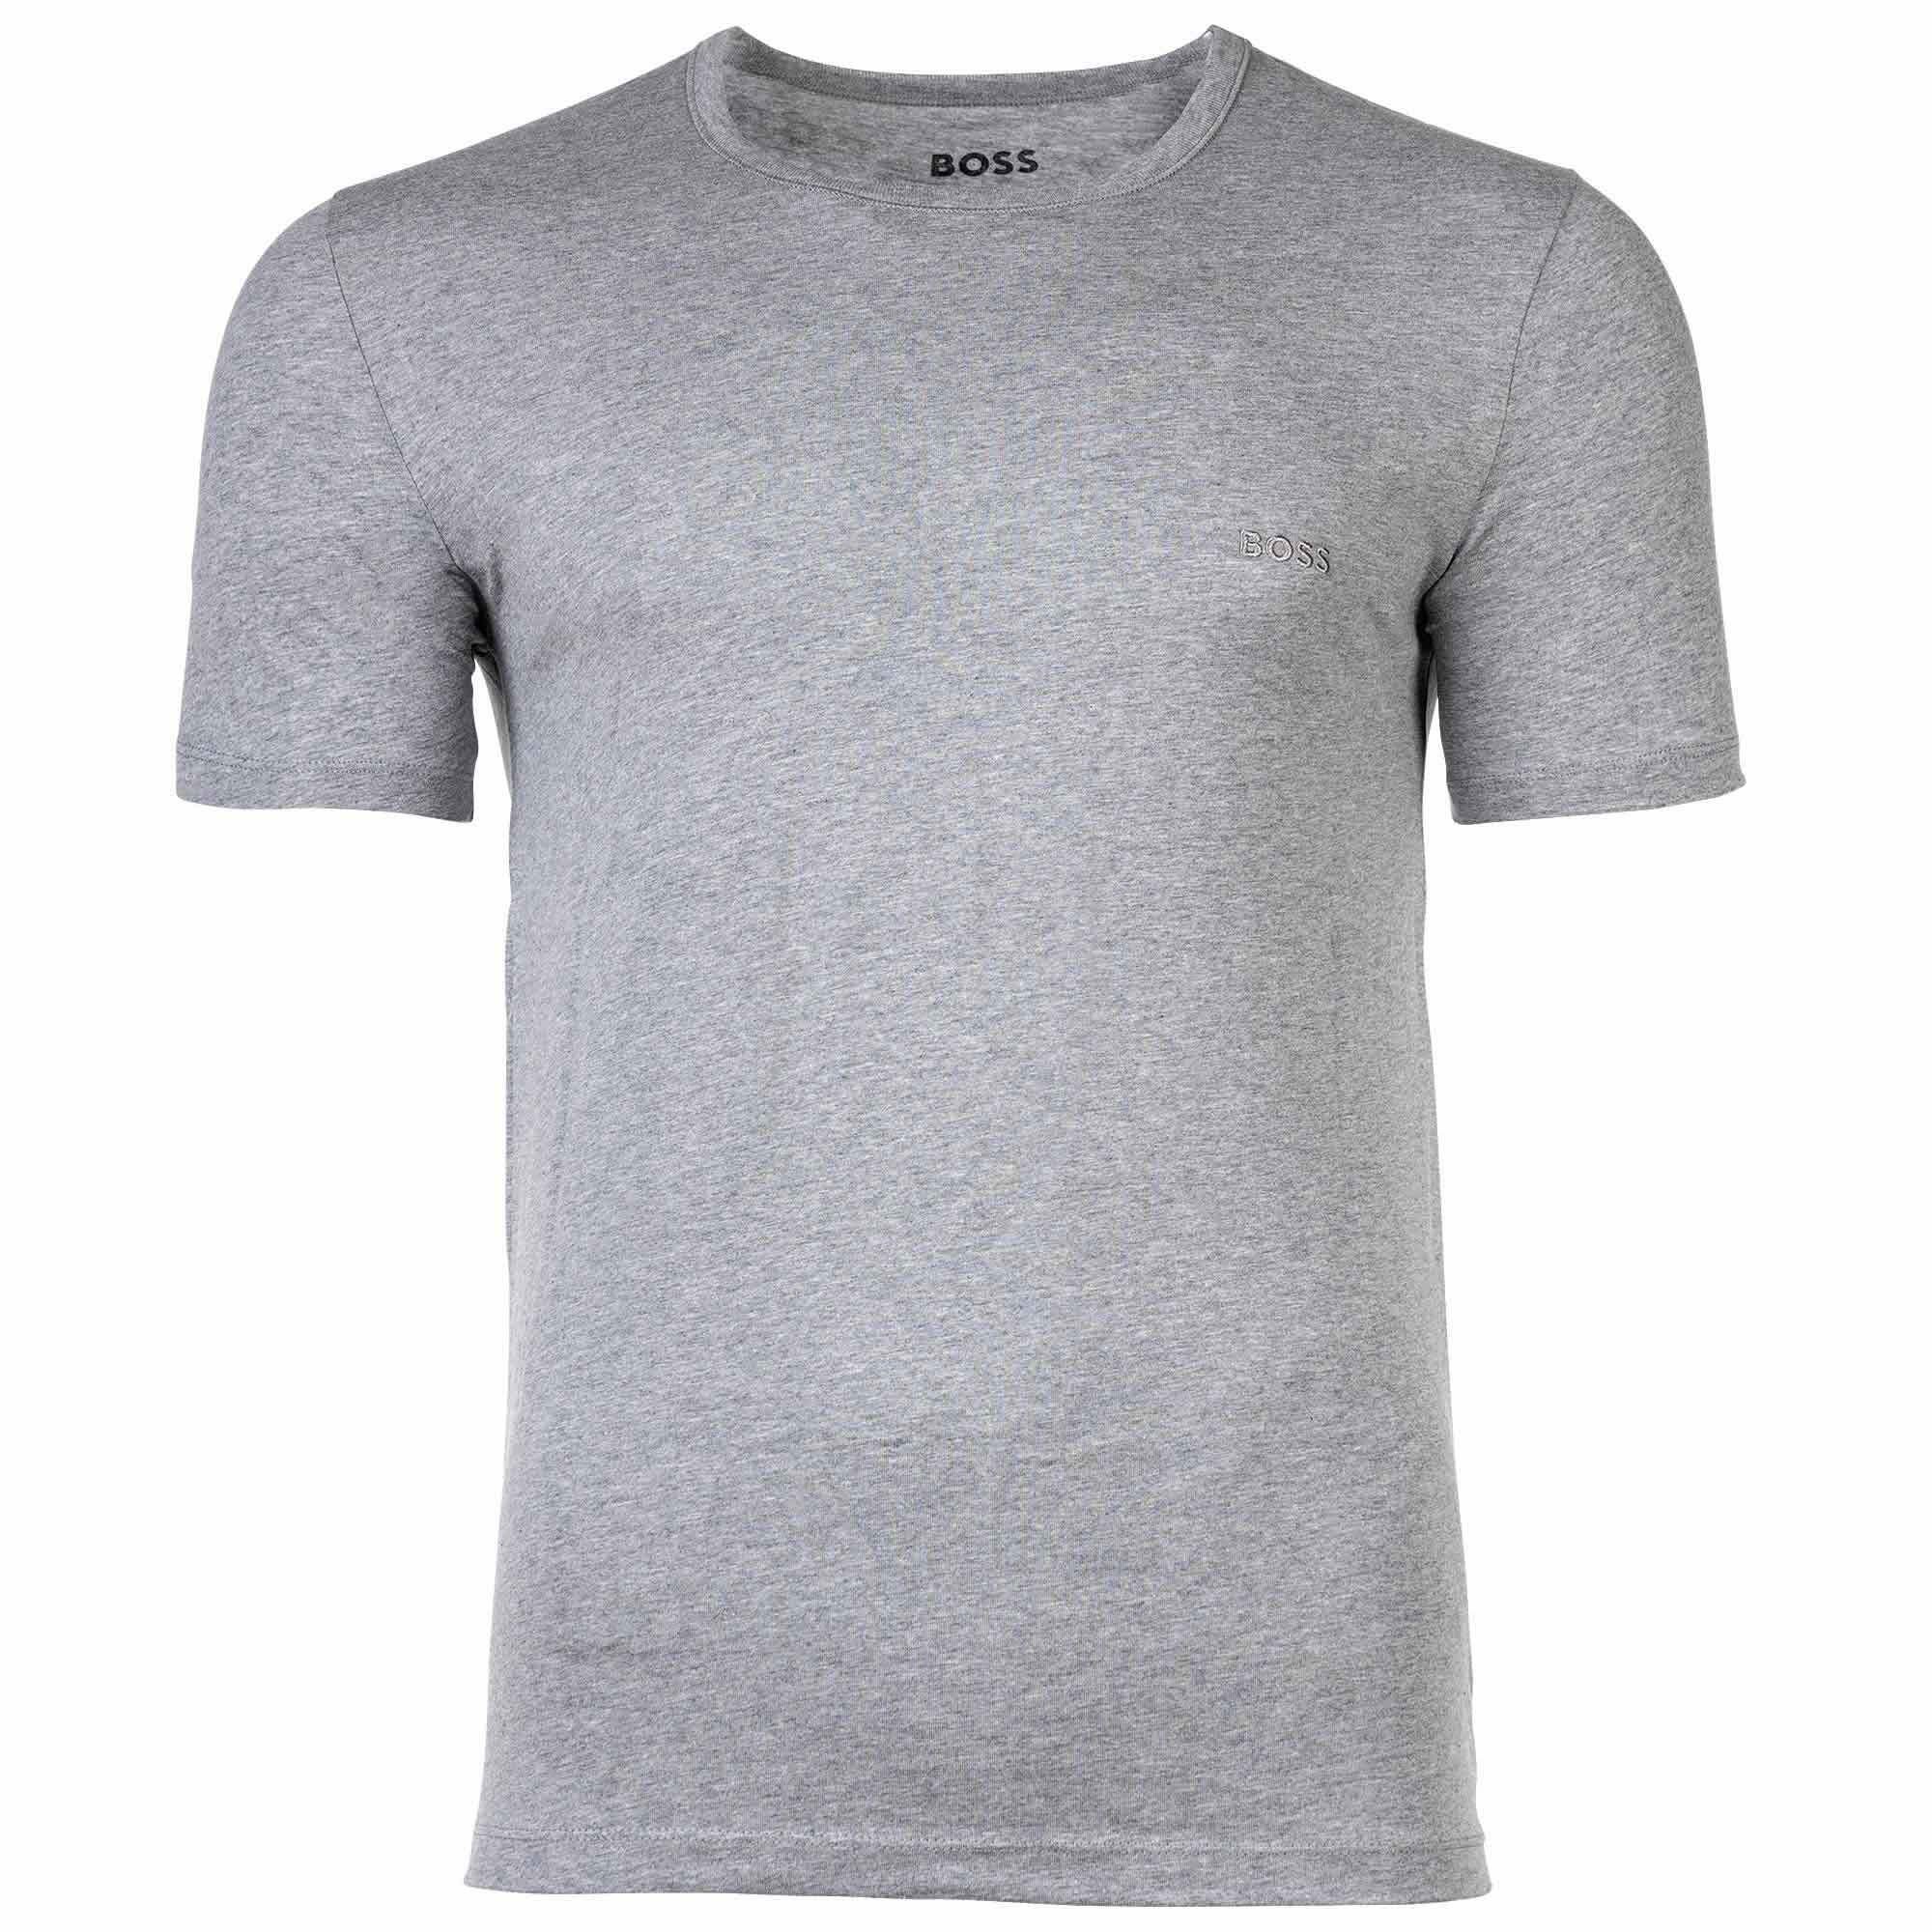 Rundhals Herren T-Shirt Classic, T-Shirt, Schwarz/Grau/Weiß RN BOSS - Pack 6er